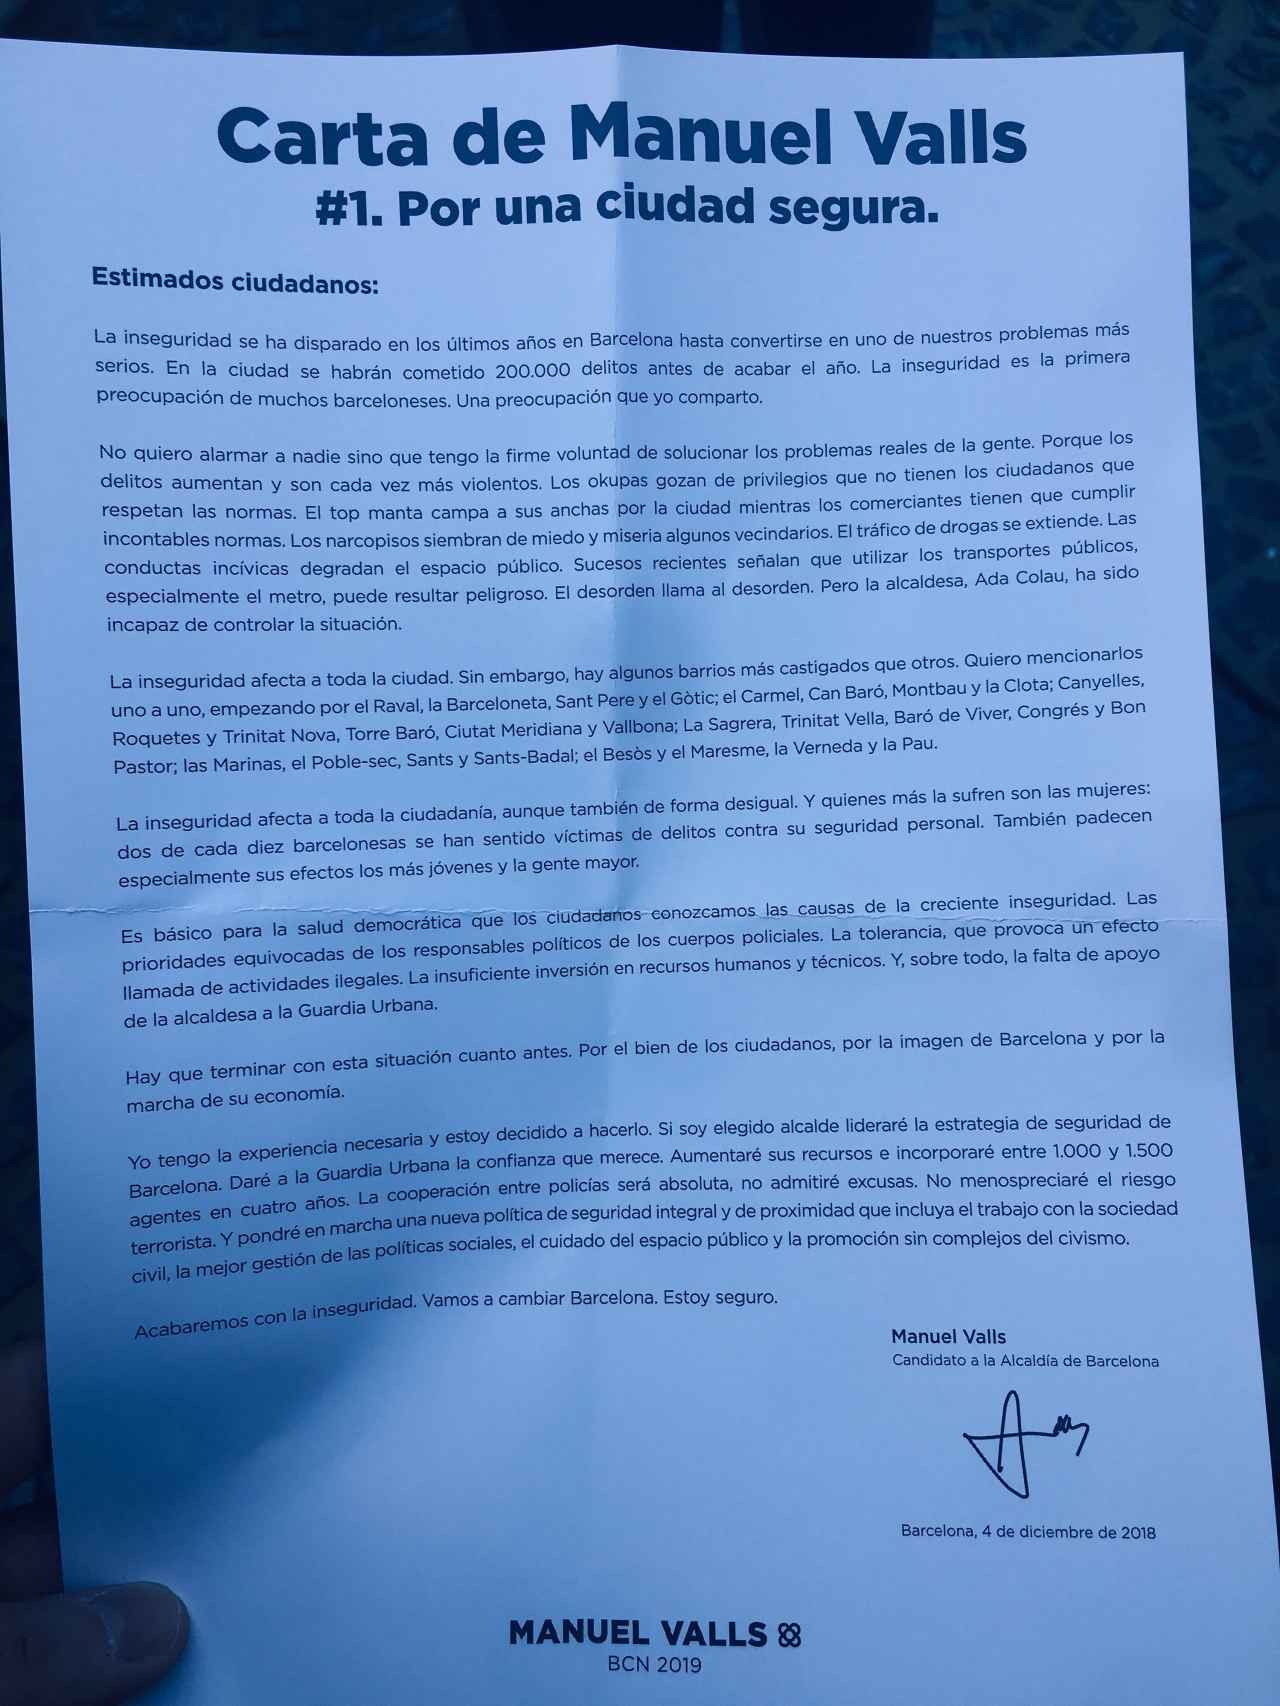 La carta Por una ciudad segura de Manuel Valls.